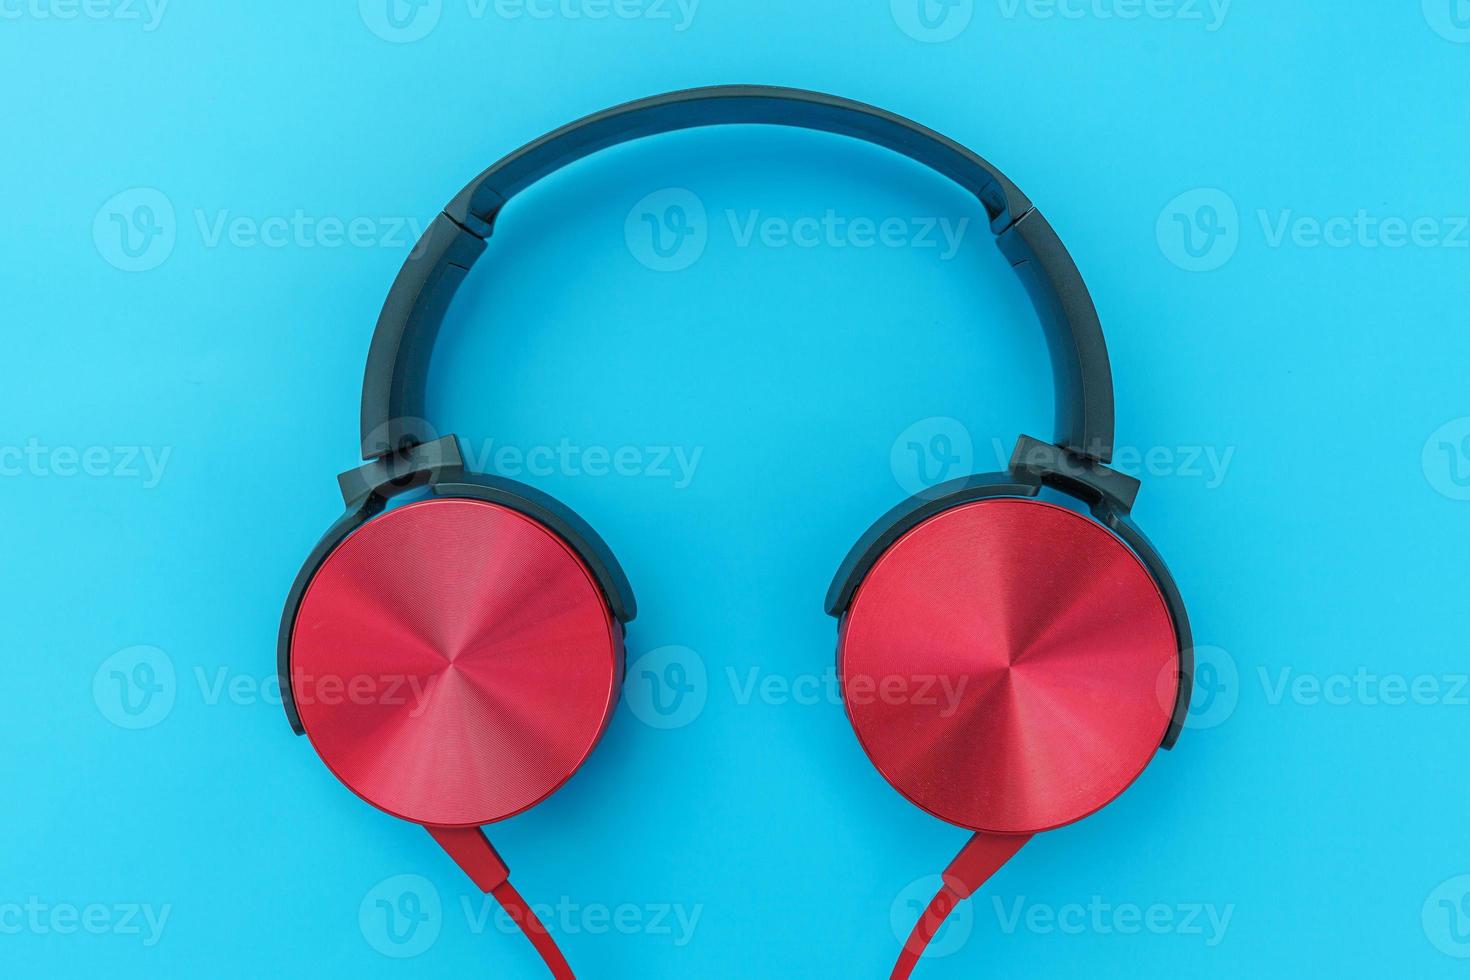 casque rouge sur fond bleu turquoise. photo simple minimaliste d'écouteurs avec espace de copie. casque dj rouge avec câble isolé sur fond coloré pastel, vue de dessus à plat. notion de musique.